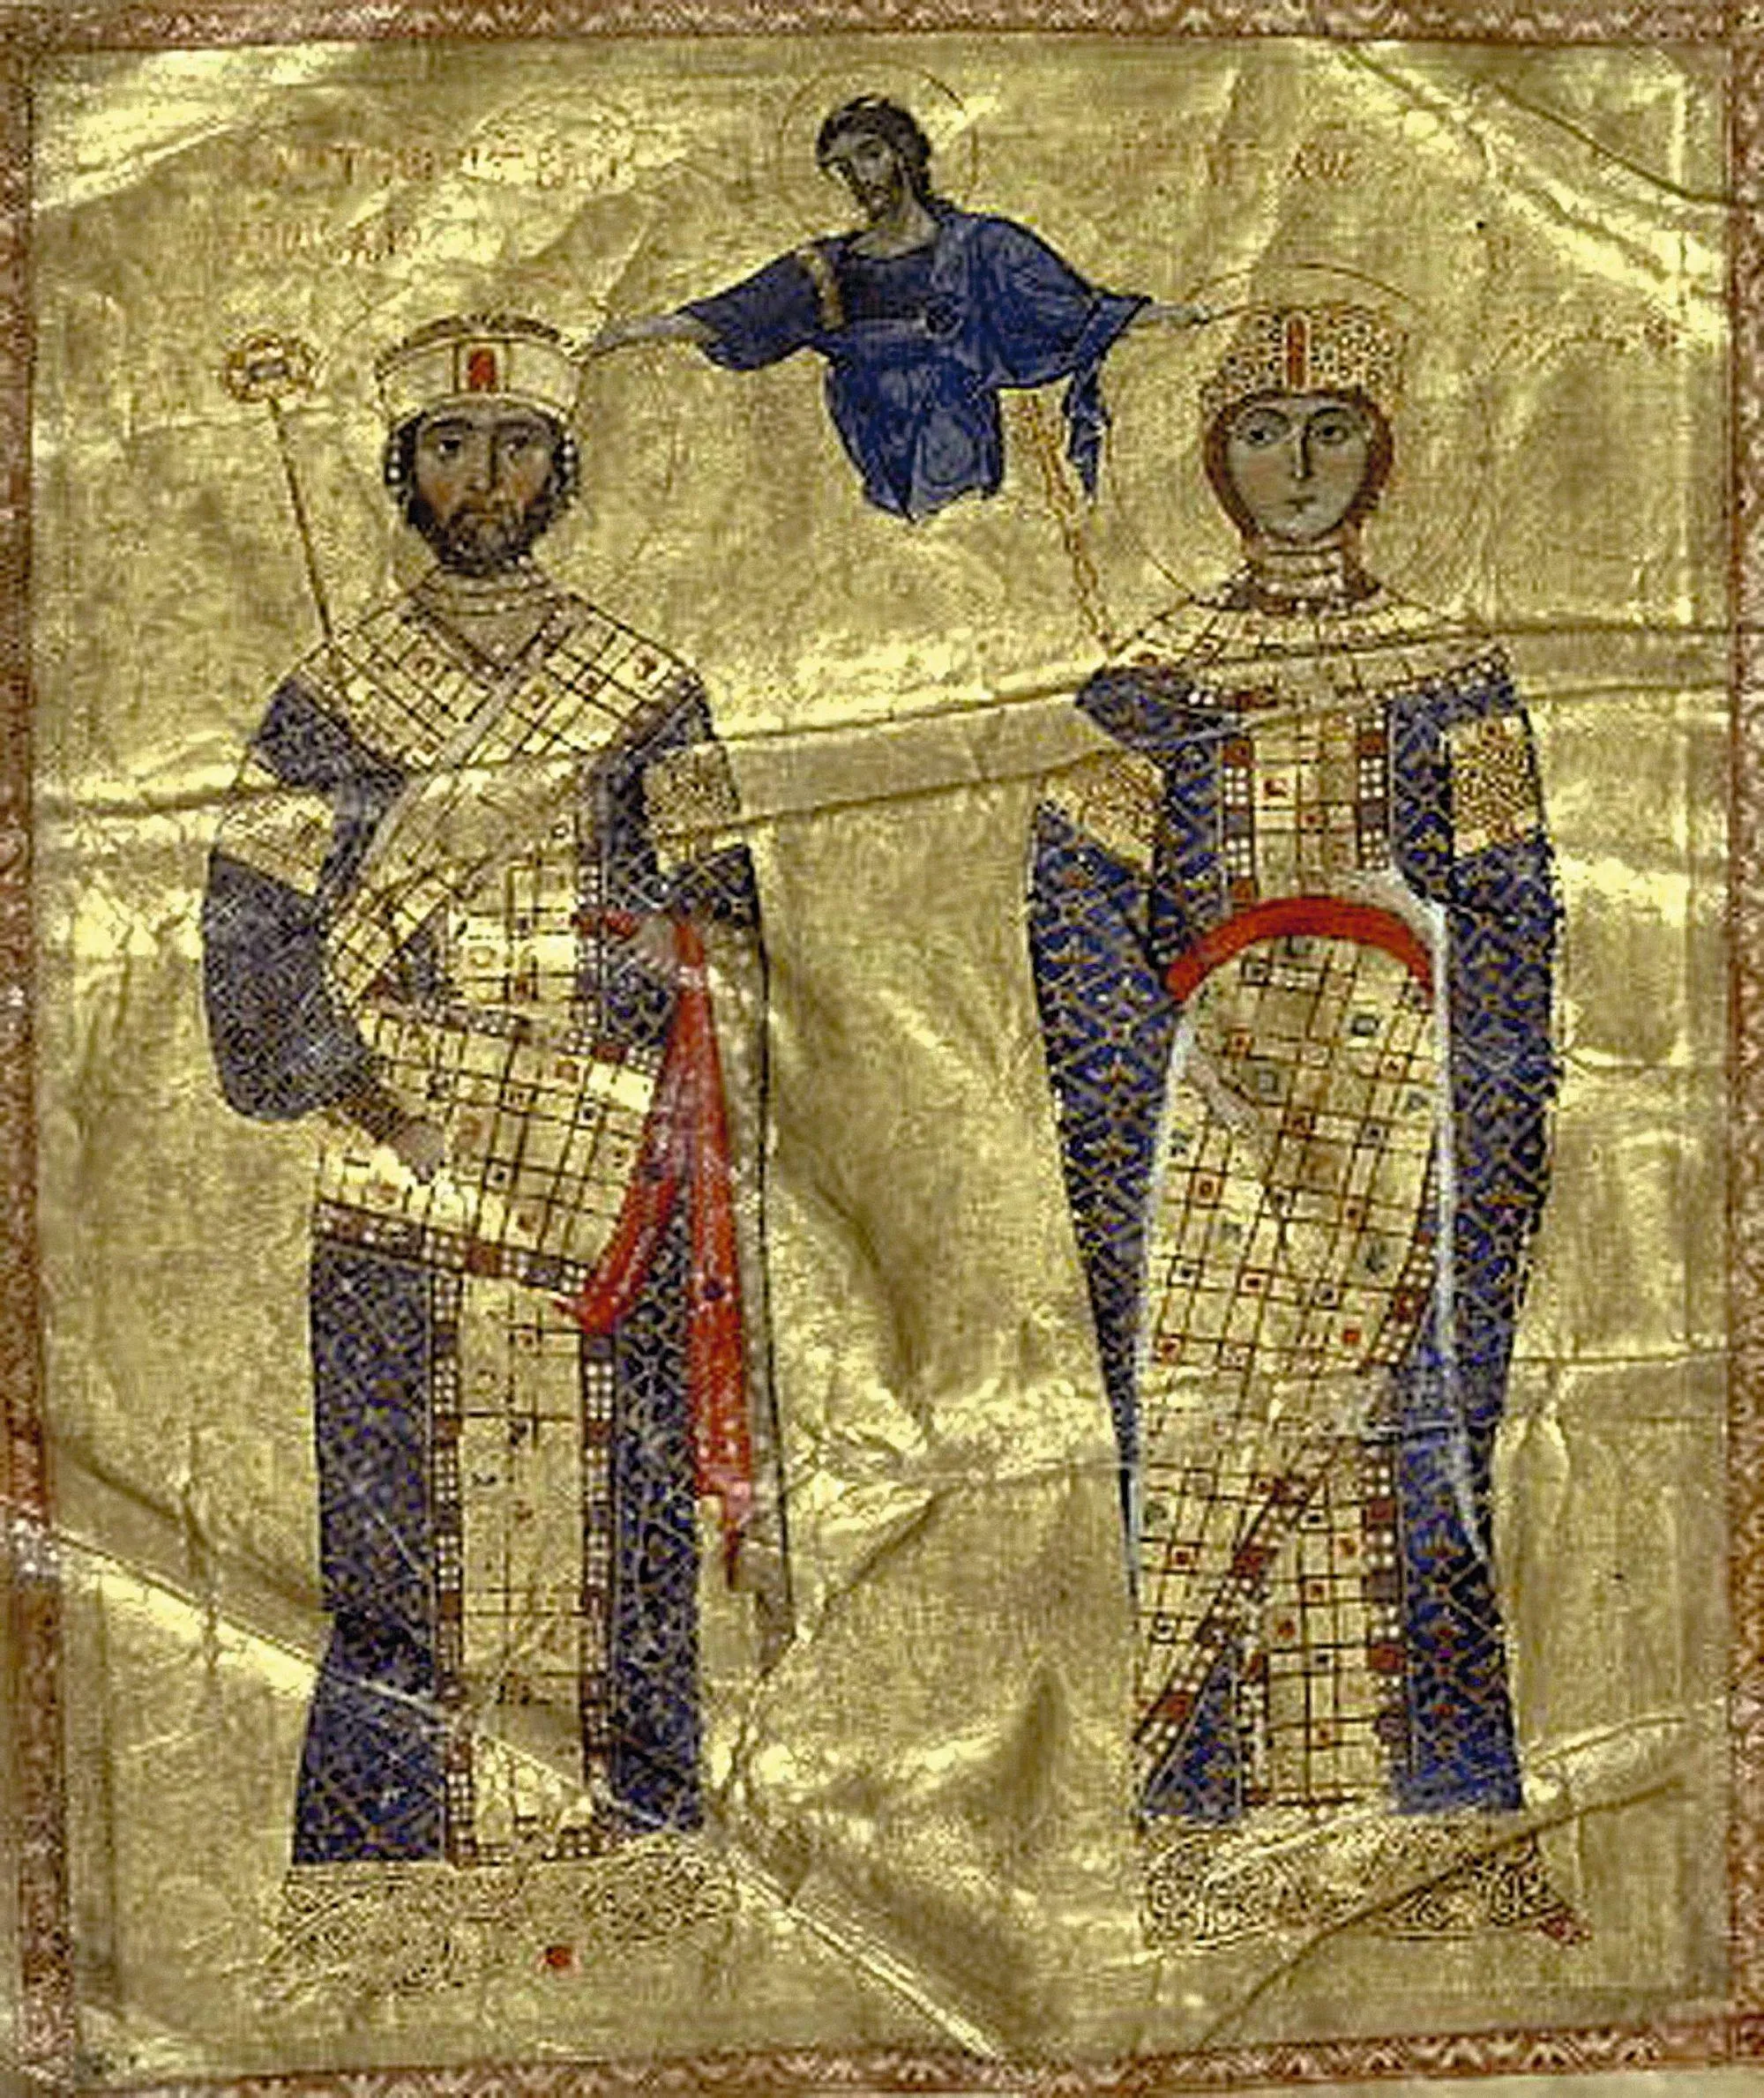 Dieu couronne l'empereur Nicéphore III et Marie d'Alanie, enluminure d'un manuscrit des Homélies de Jean Chrysostome, 1079, BnF, Paris